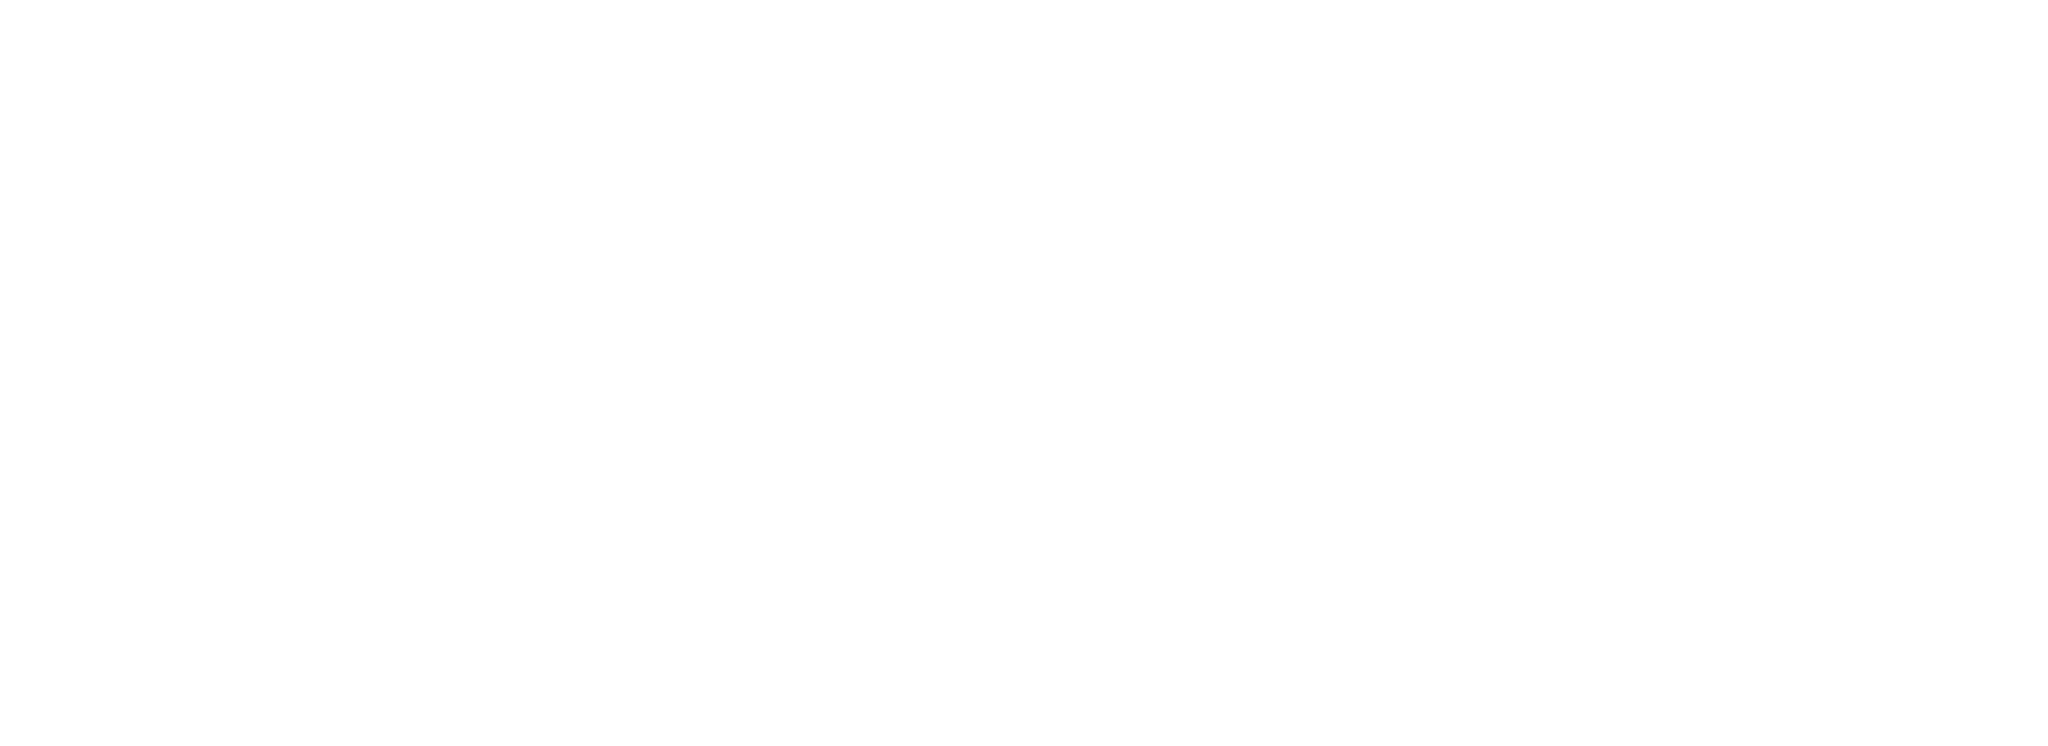 Piper's Heath logo white